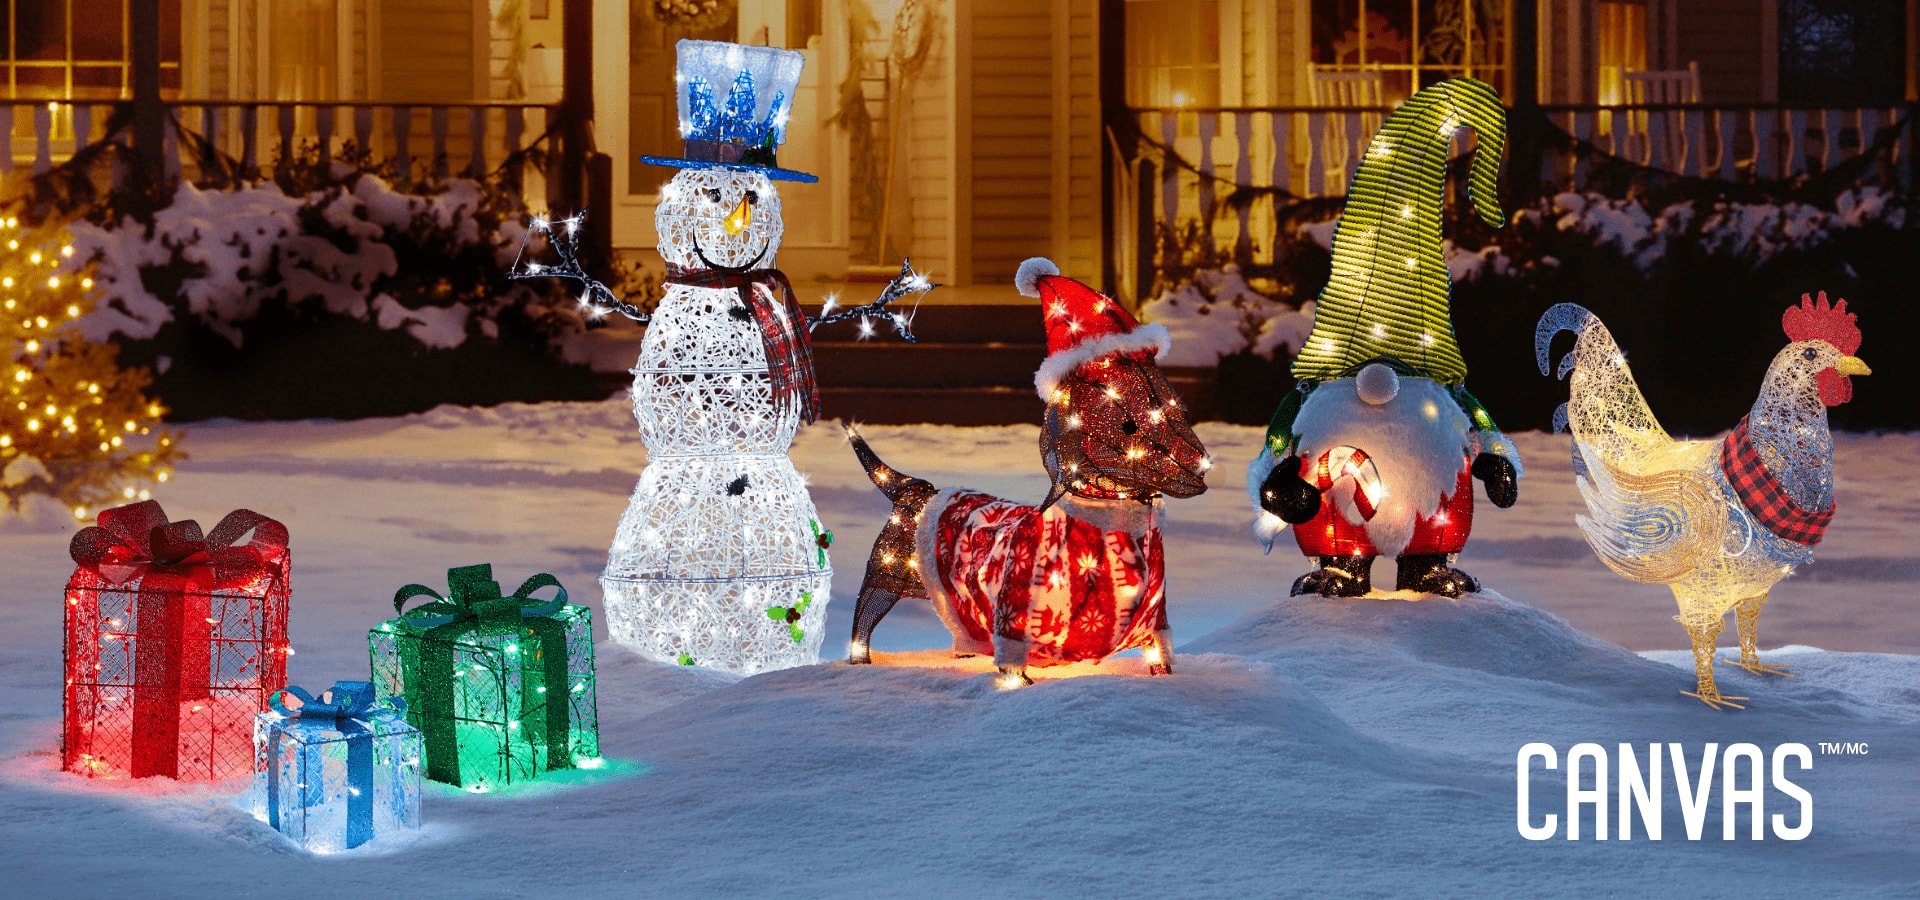 Un assortiment de décorations de Noël fantaisistes illuminées sur la pelouse d’une maison comprenant un bonhomme de neige, un lama, un gnome, un pingouin et un teckel.